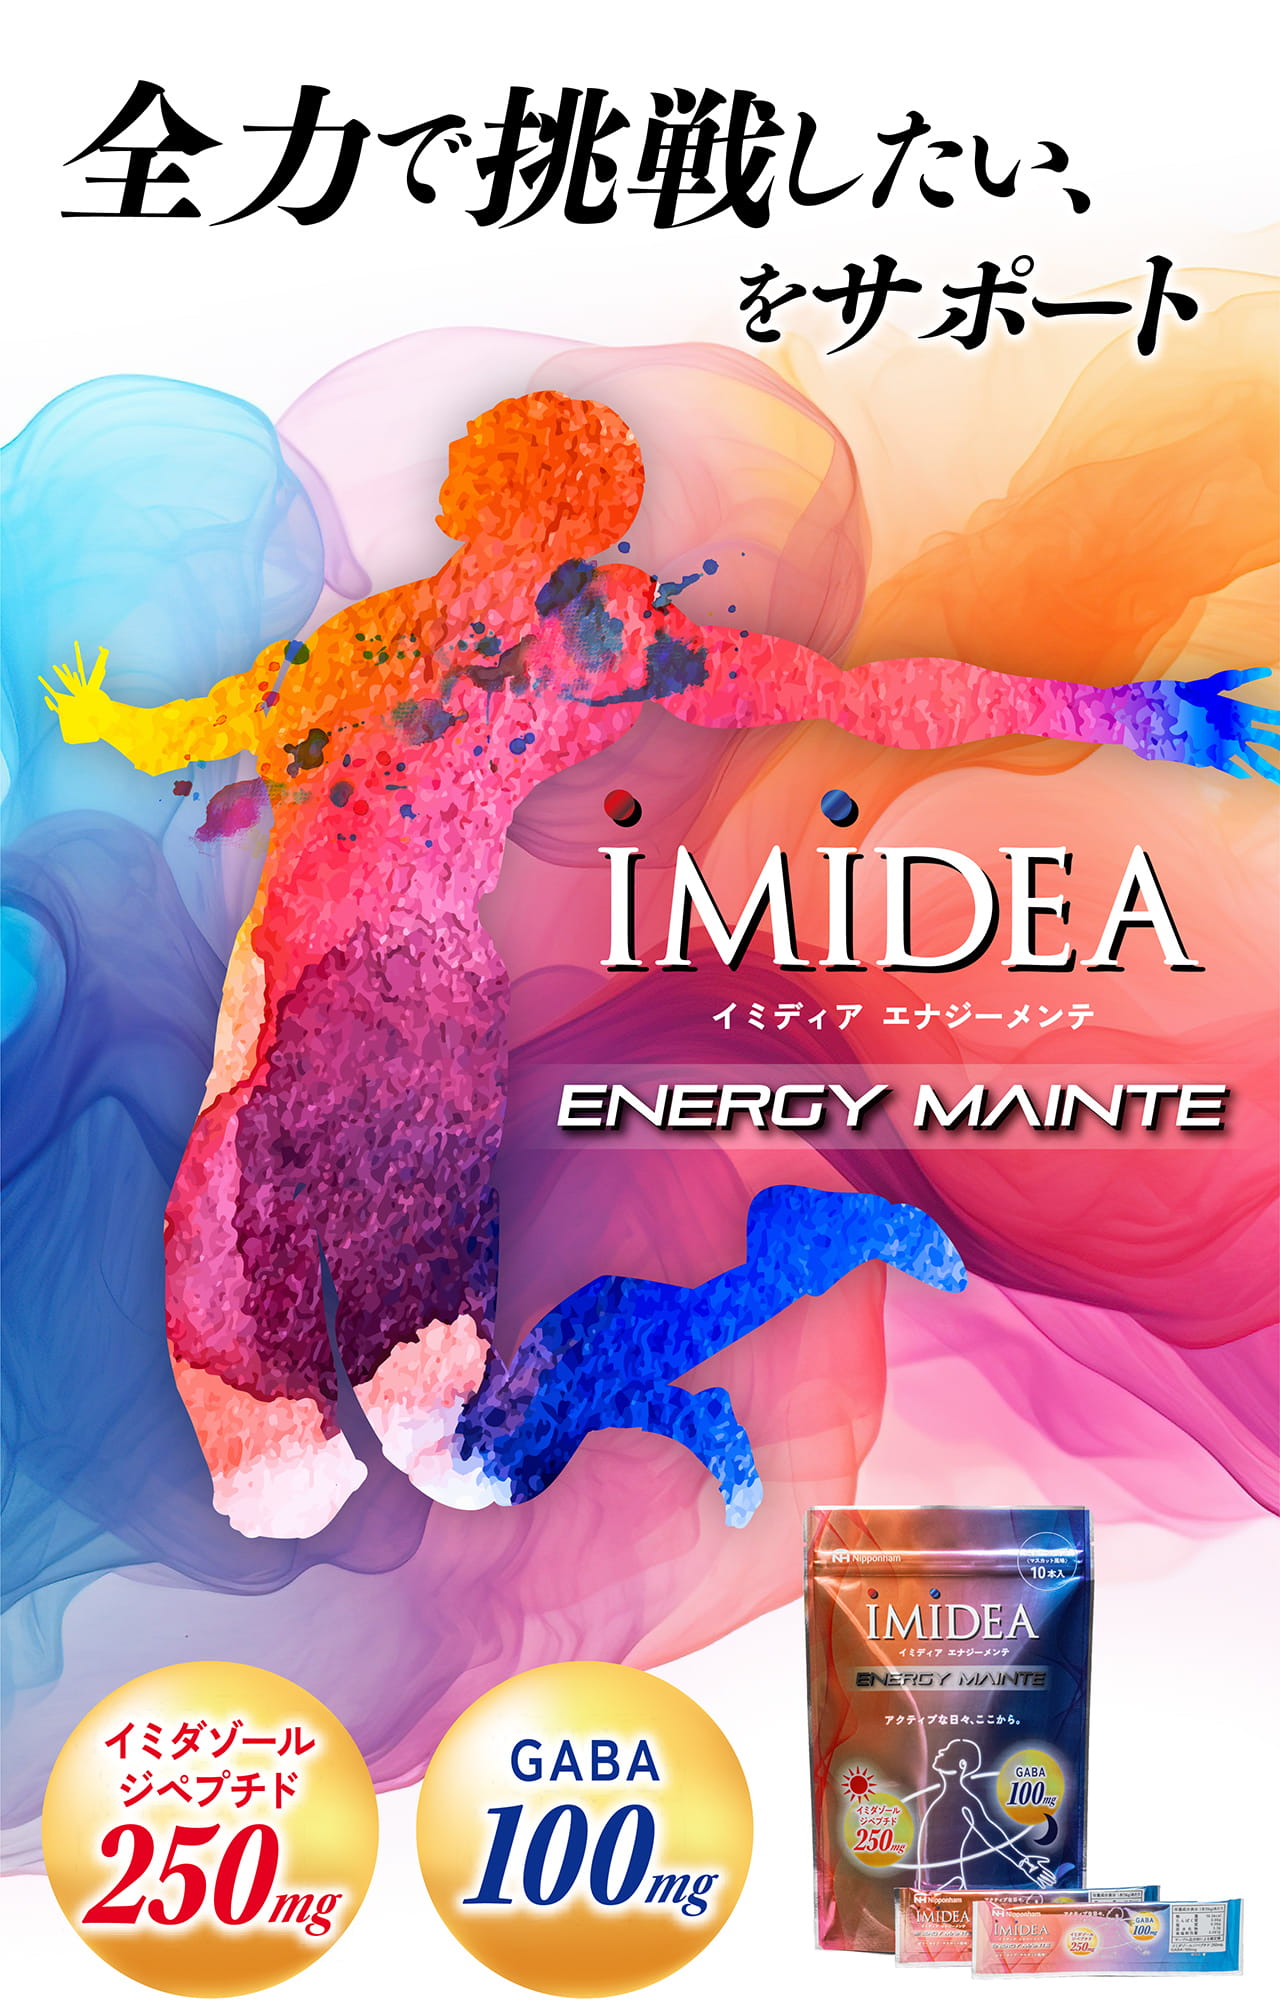 全力で挑戦をしたい、をサポート　IMIDEA イミディアエナジーメンテ イミダゾールジペプチド250mg GABA100mg